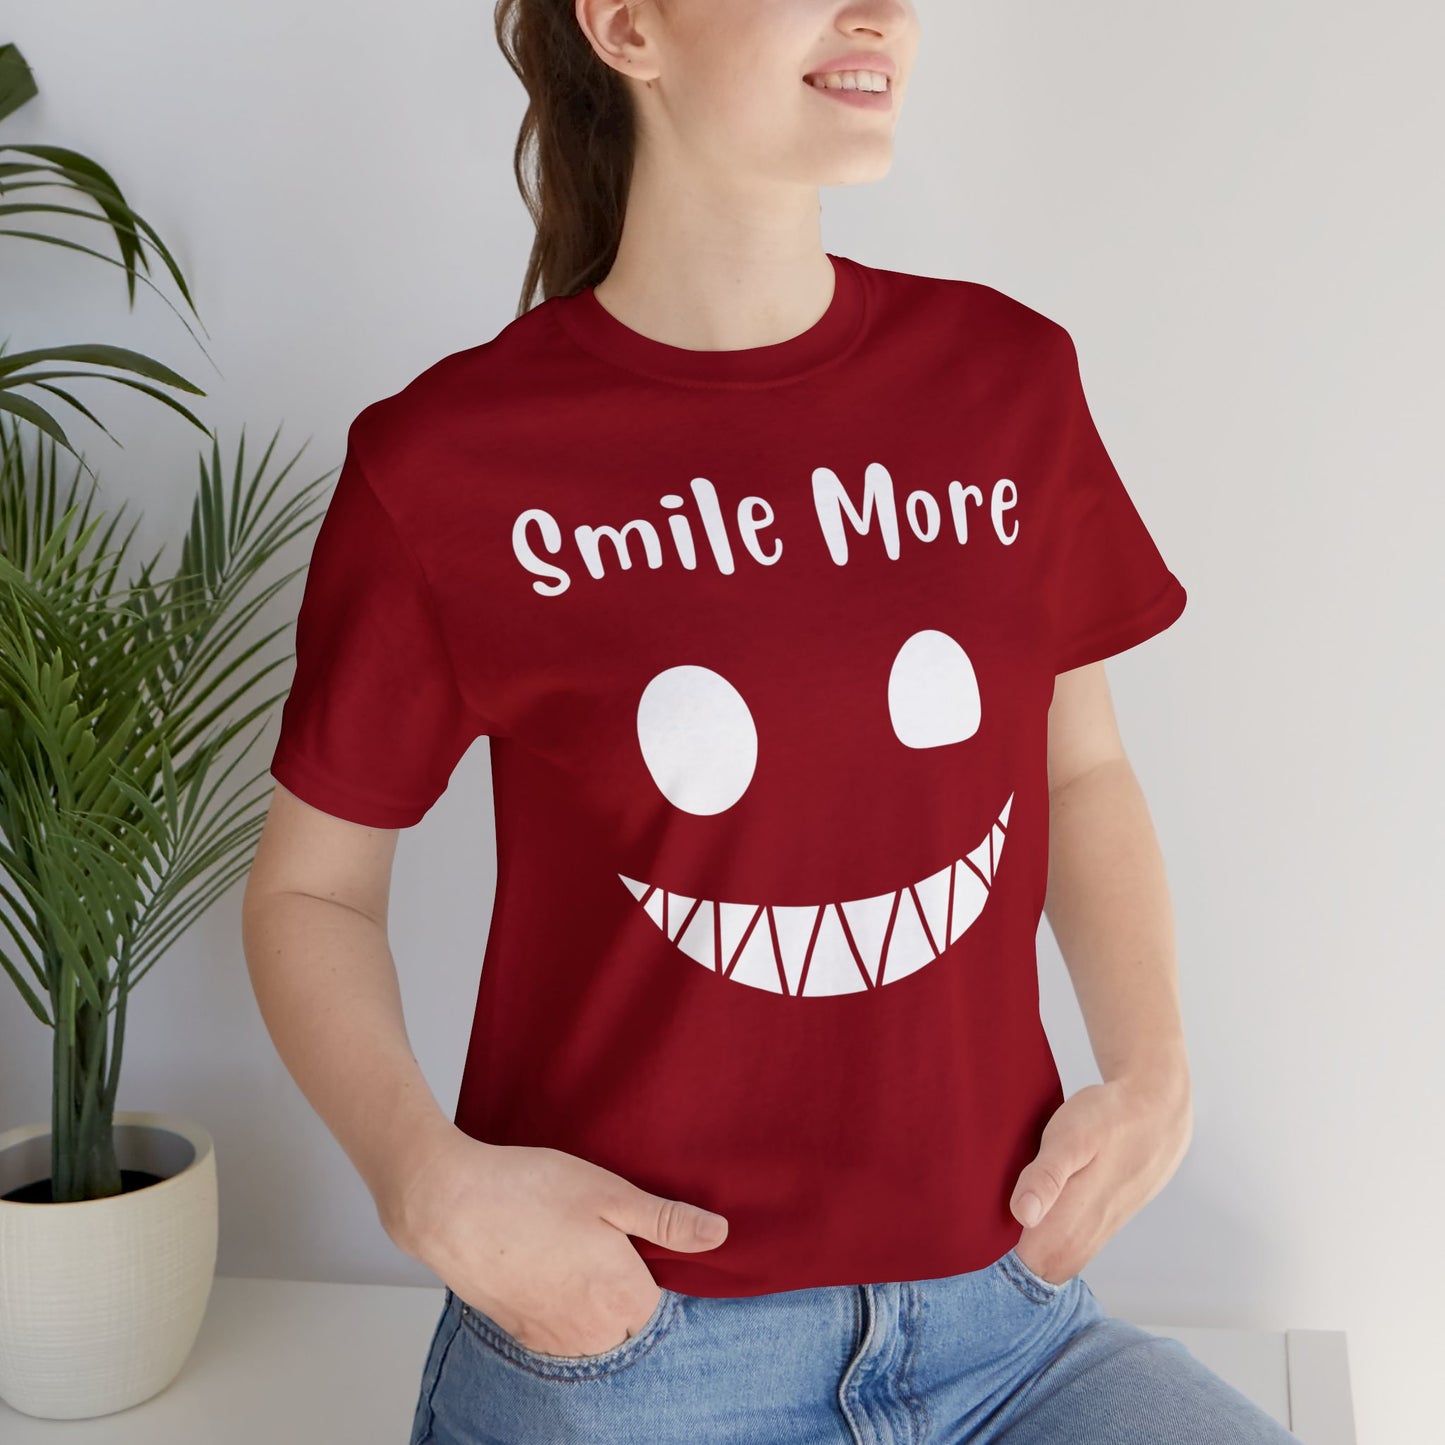 Smile More Creepy Tee